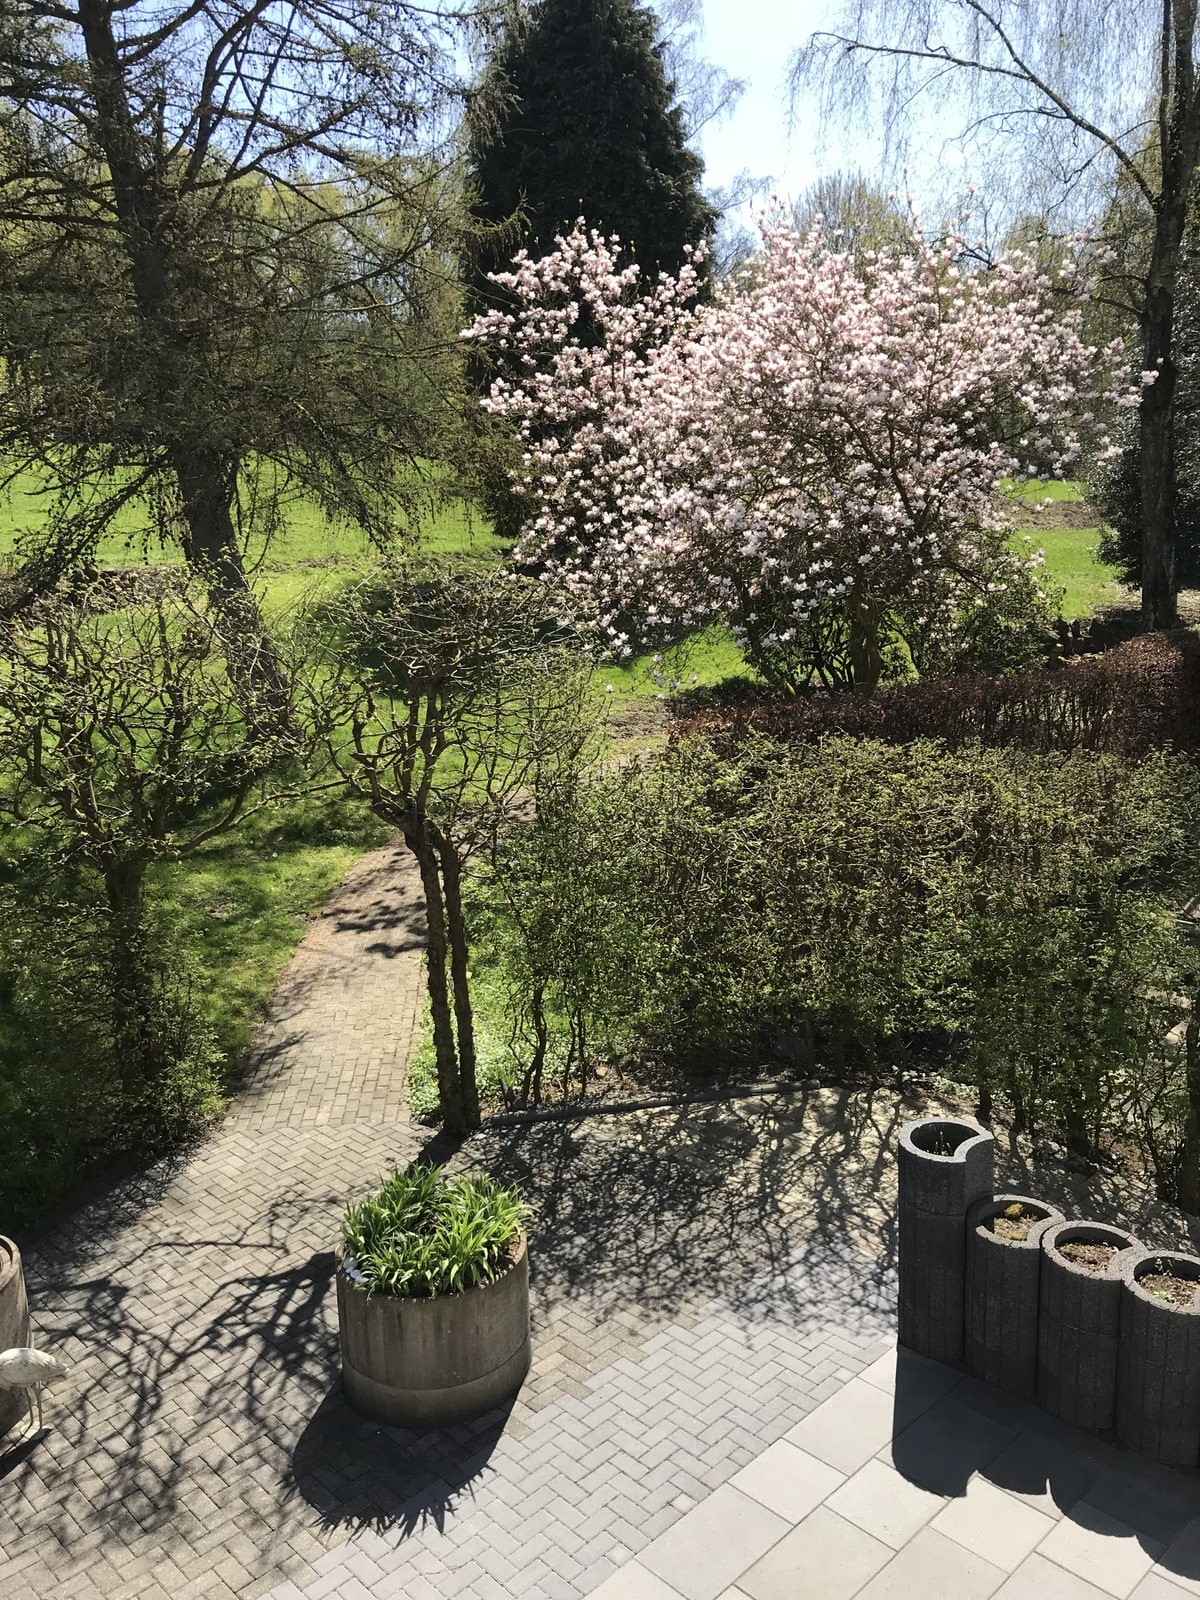 Blick auf die Terrasse und in den Garten unserer Demenz WG Haus Bierenbachtal Nuembrecht